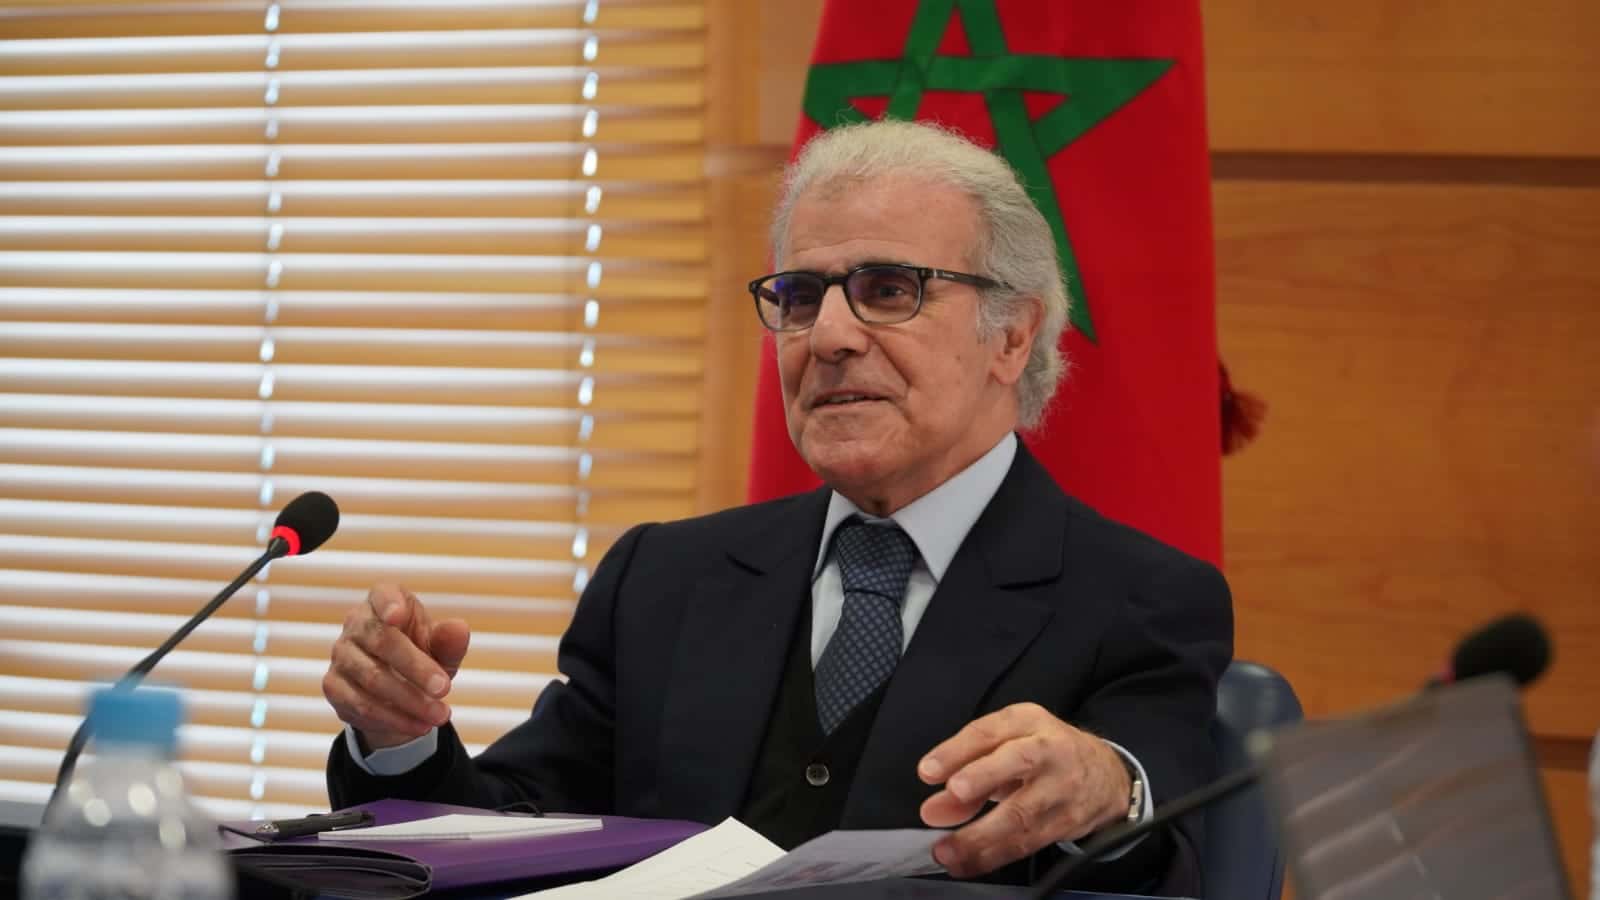 بنك المغرب يتوقع تضخما بـ6.2 بالمئة ونمو الاقتصاد الوطني بـ2.4 بالمئة هذا العام